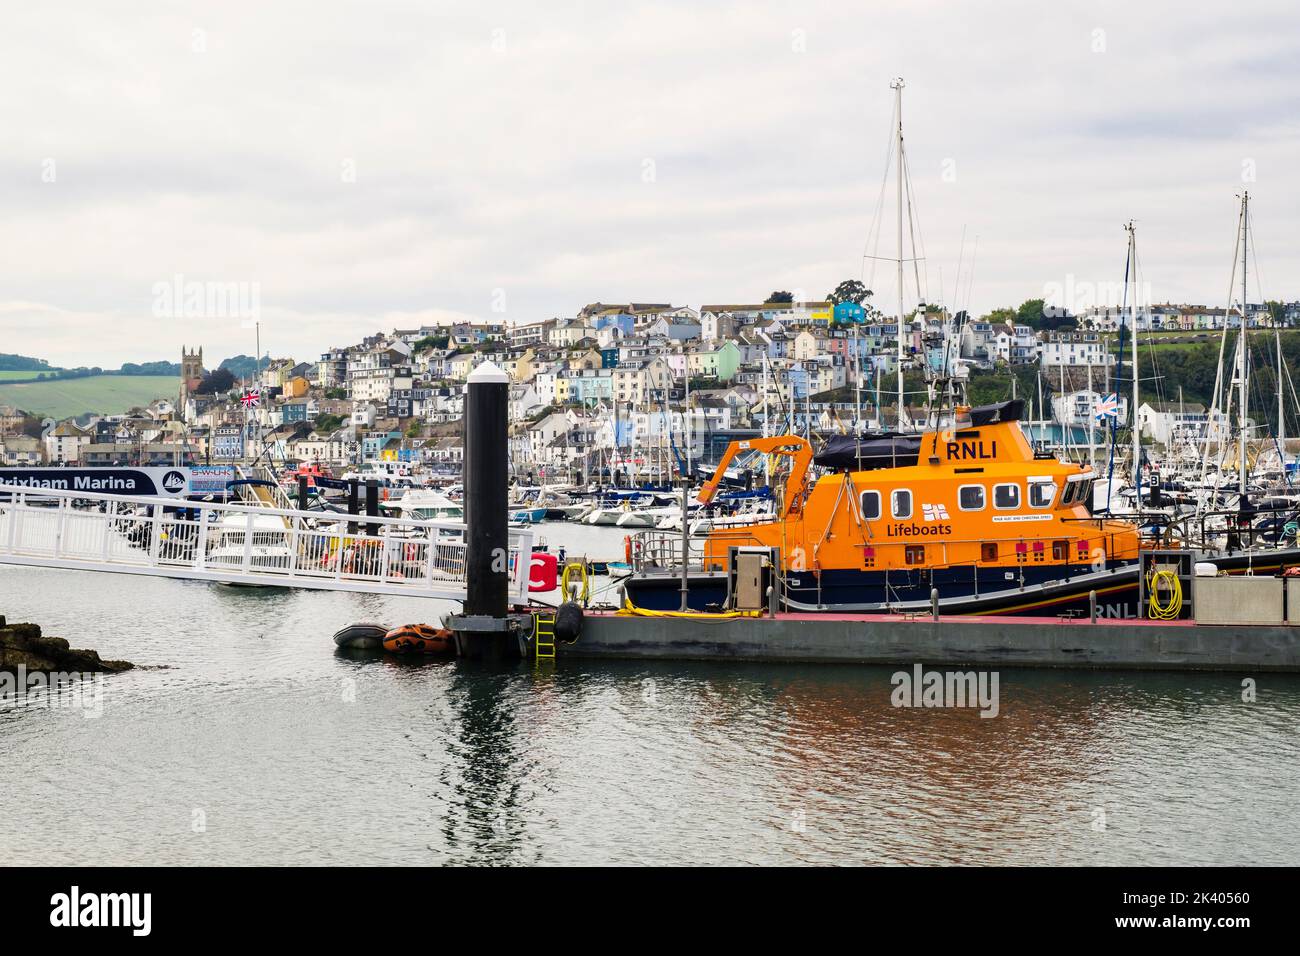 RNLI Rettungsboot an einem Steg im Hafen mit der Stadt dahinter. Brixham, Devon, England, Großbritannien Stockfoto